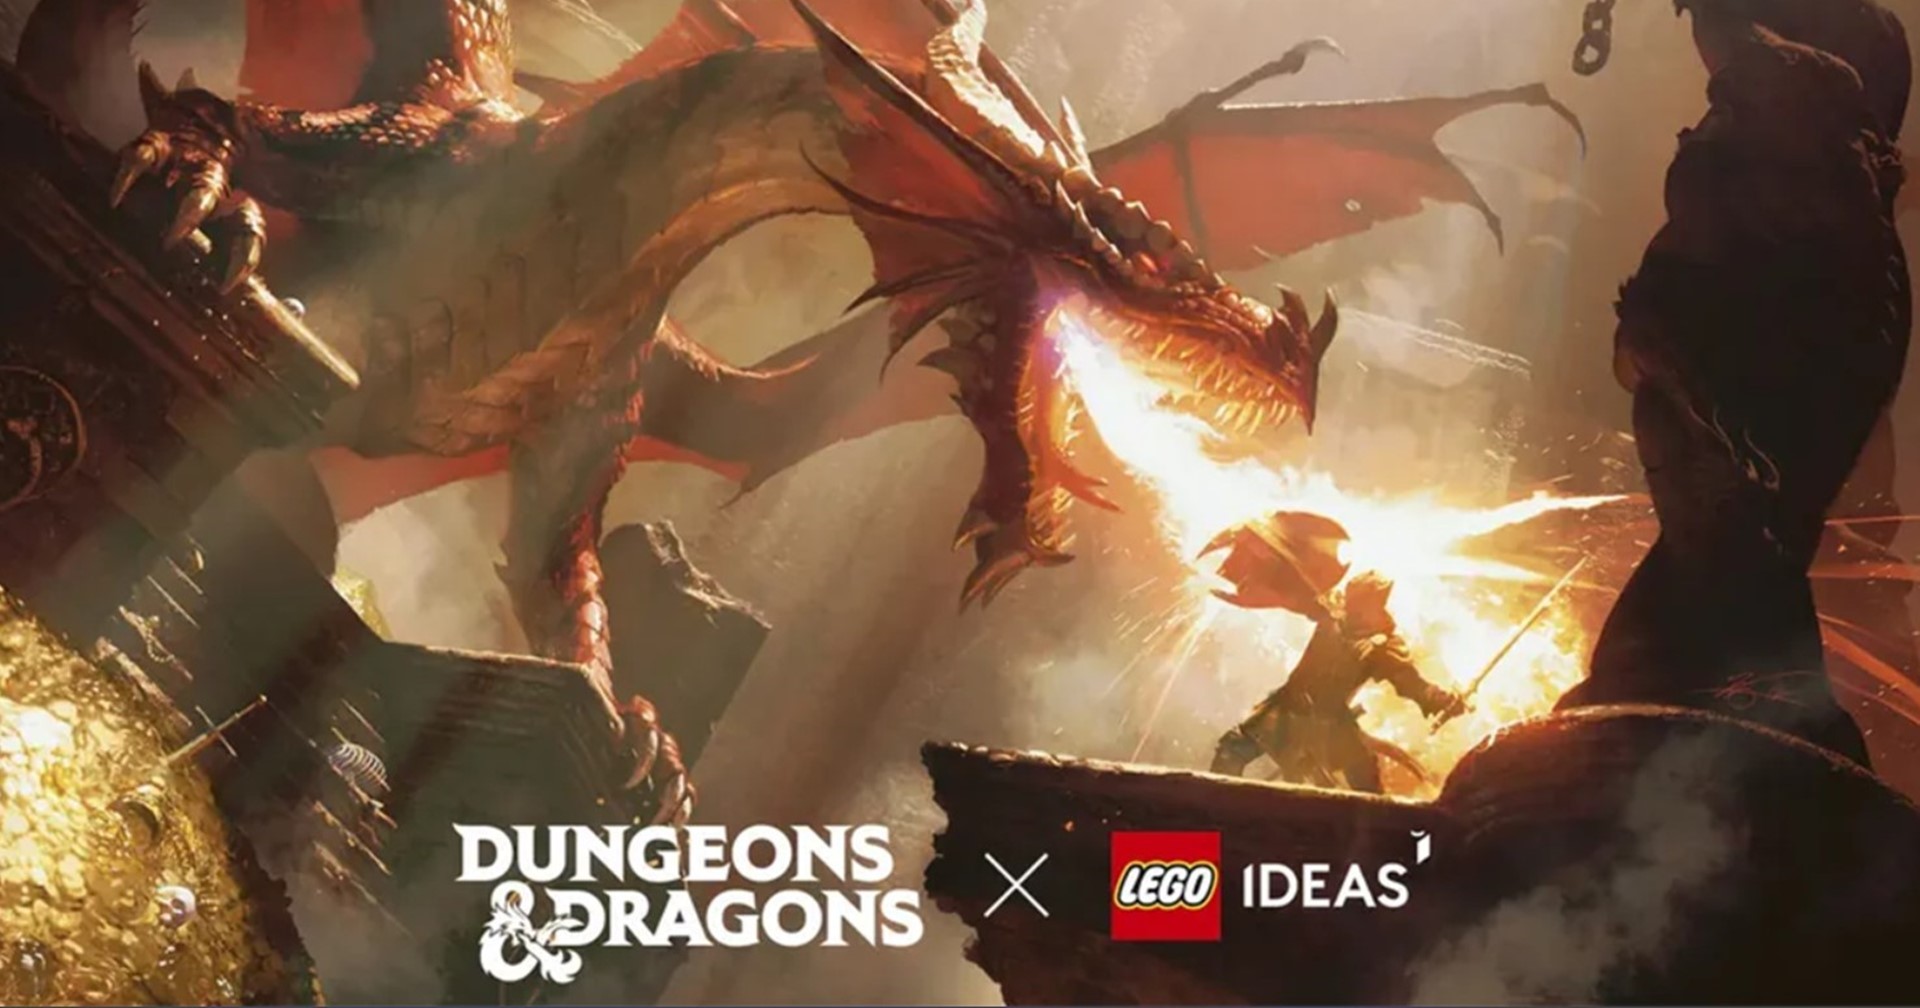 [ข่าวลือ] LEGO เตรียมครอสโอเวอร์กับ ‘Dungeons & Dragons’ เร็ว ๆ นี้